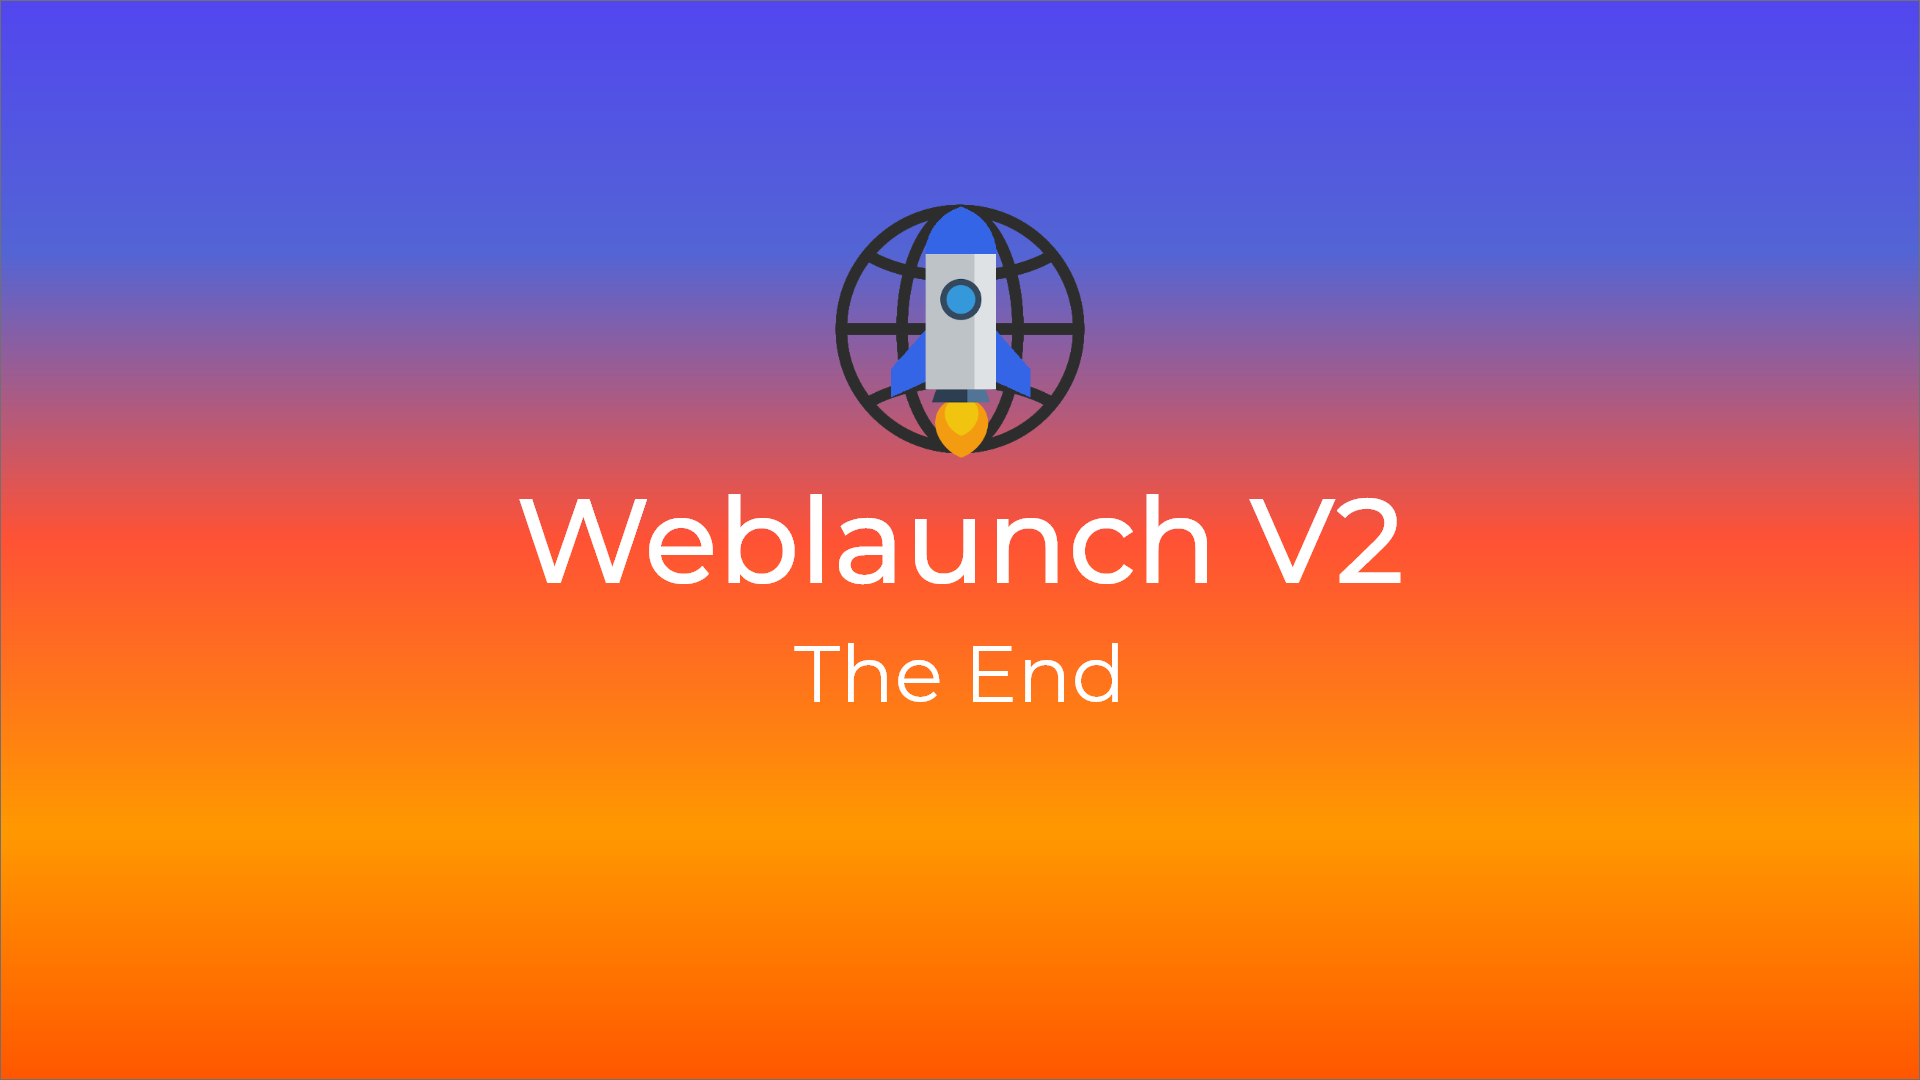 The end of Weblaunch V2